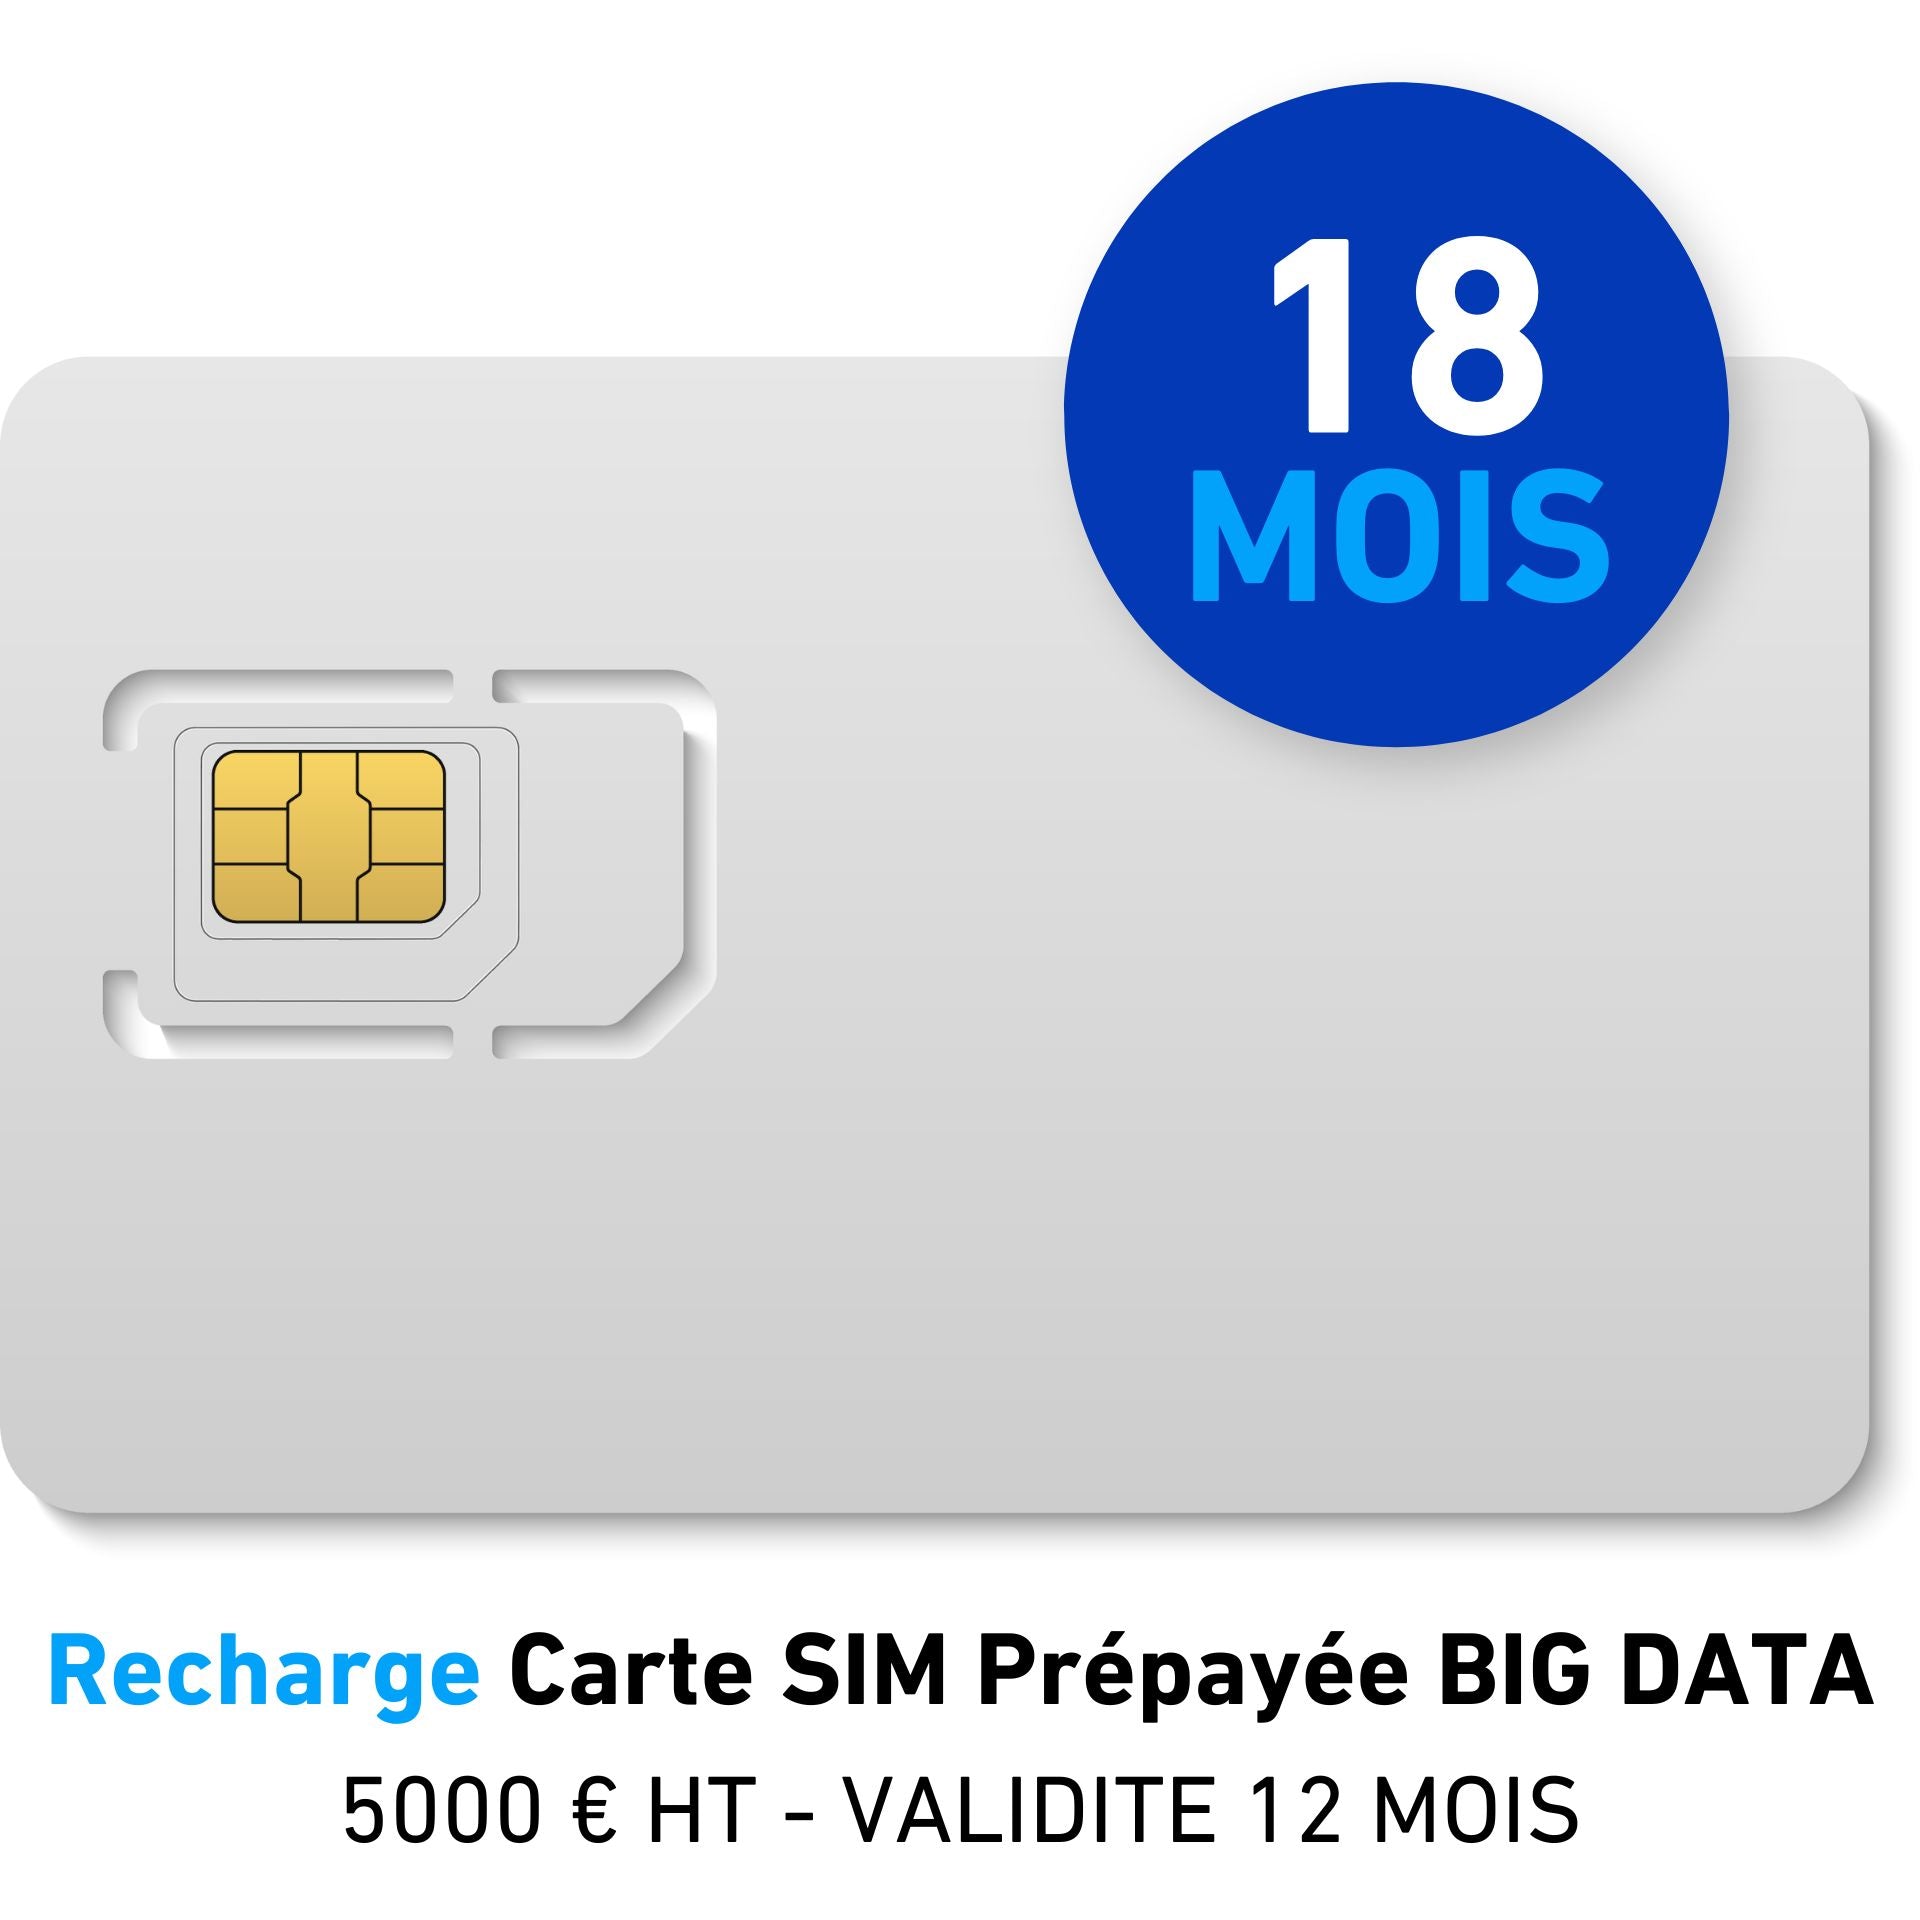 Recharge Carte SIM Prépayée BIG DATA 5000 € HT - VALIDITE 18 MOIS